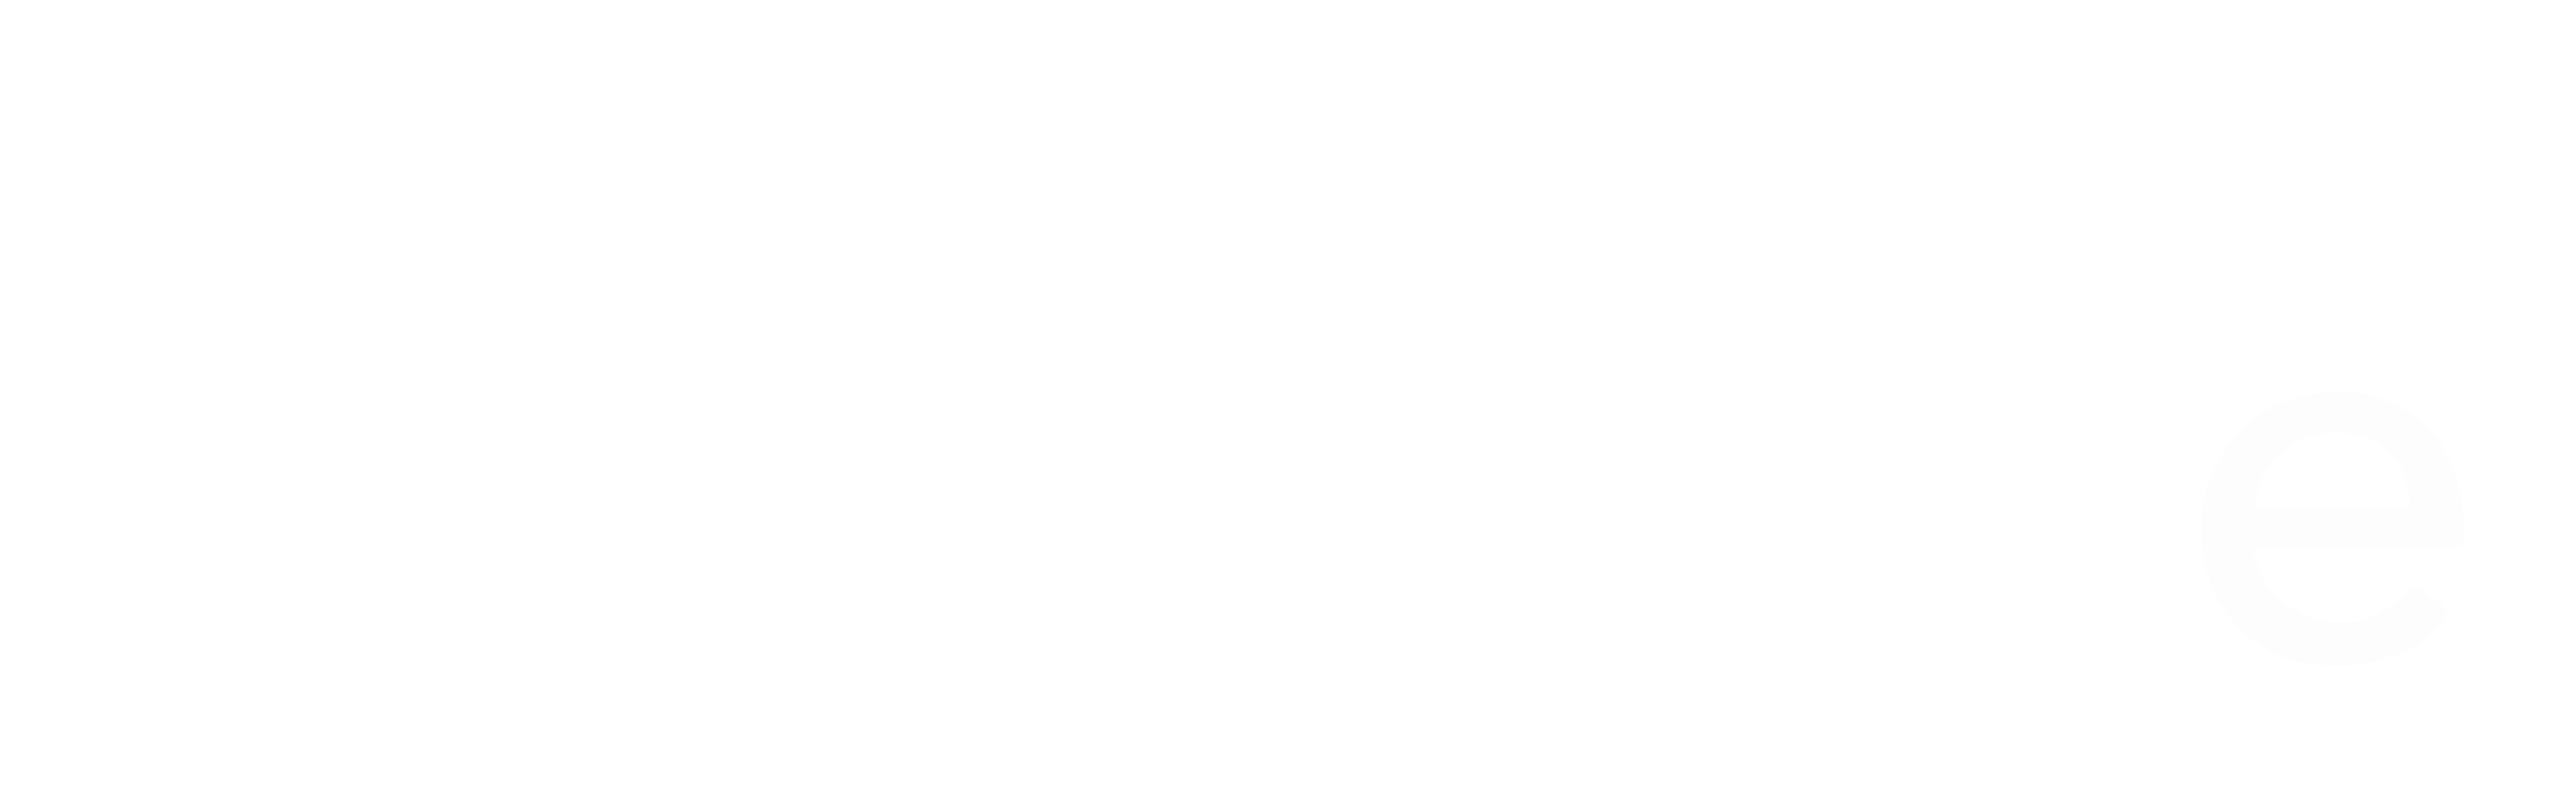 nobotel logo white